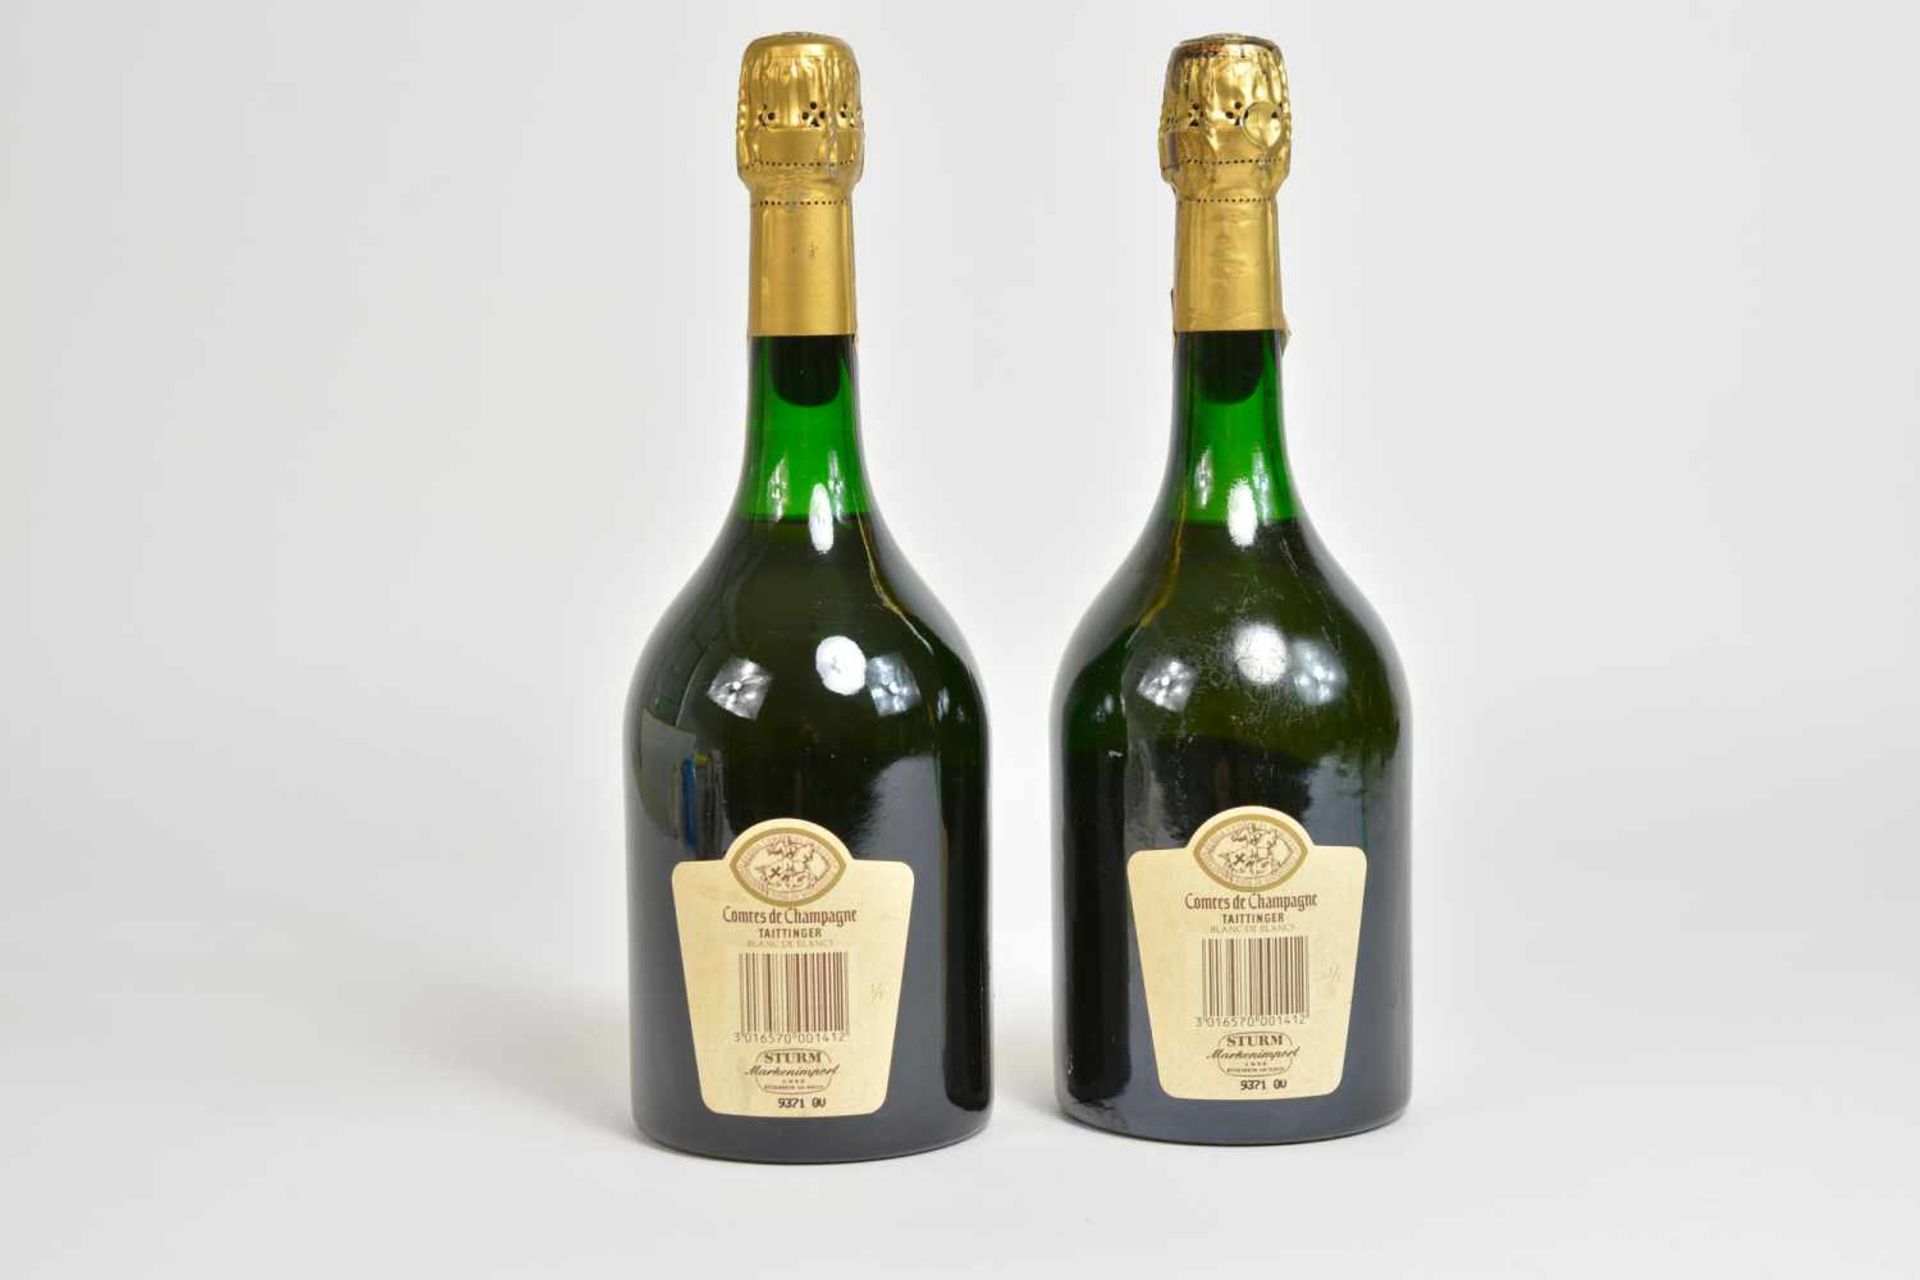 Taittinger - Comtes de Champagne2-tlg., Champagne, Blanc de Blancs Chardonnay, Brut, 1982, 0,75 l, - Image 2 of 2